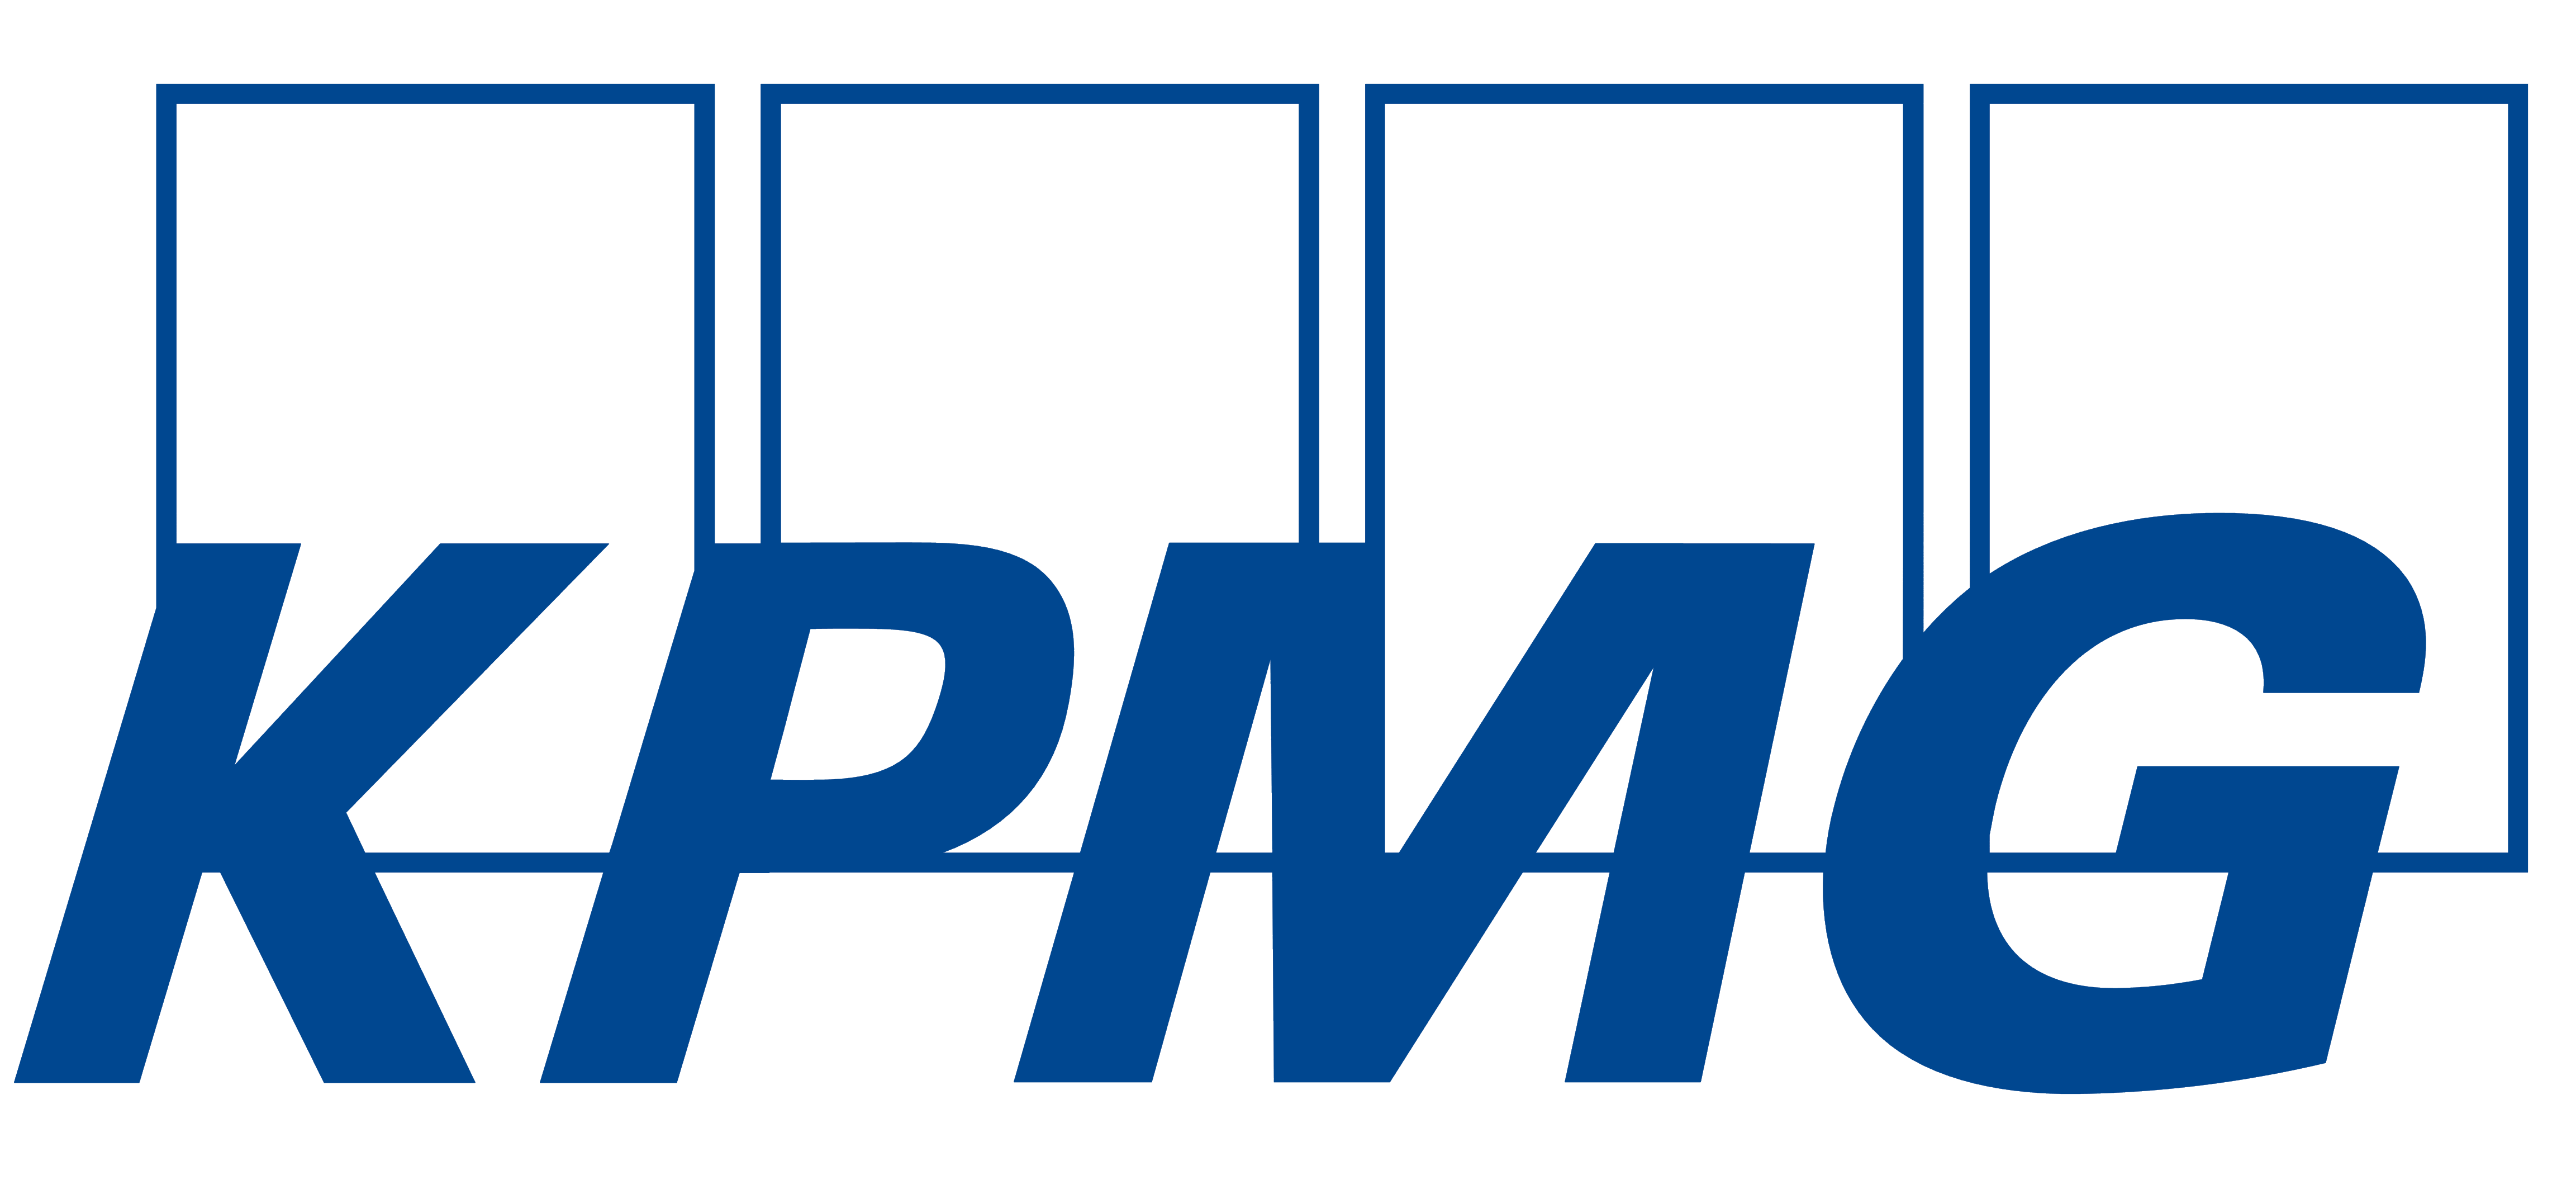 KPMG logo, logotype